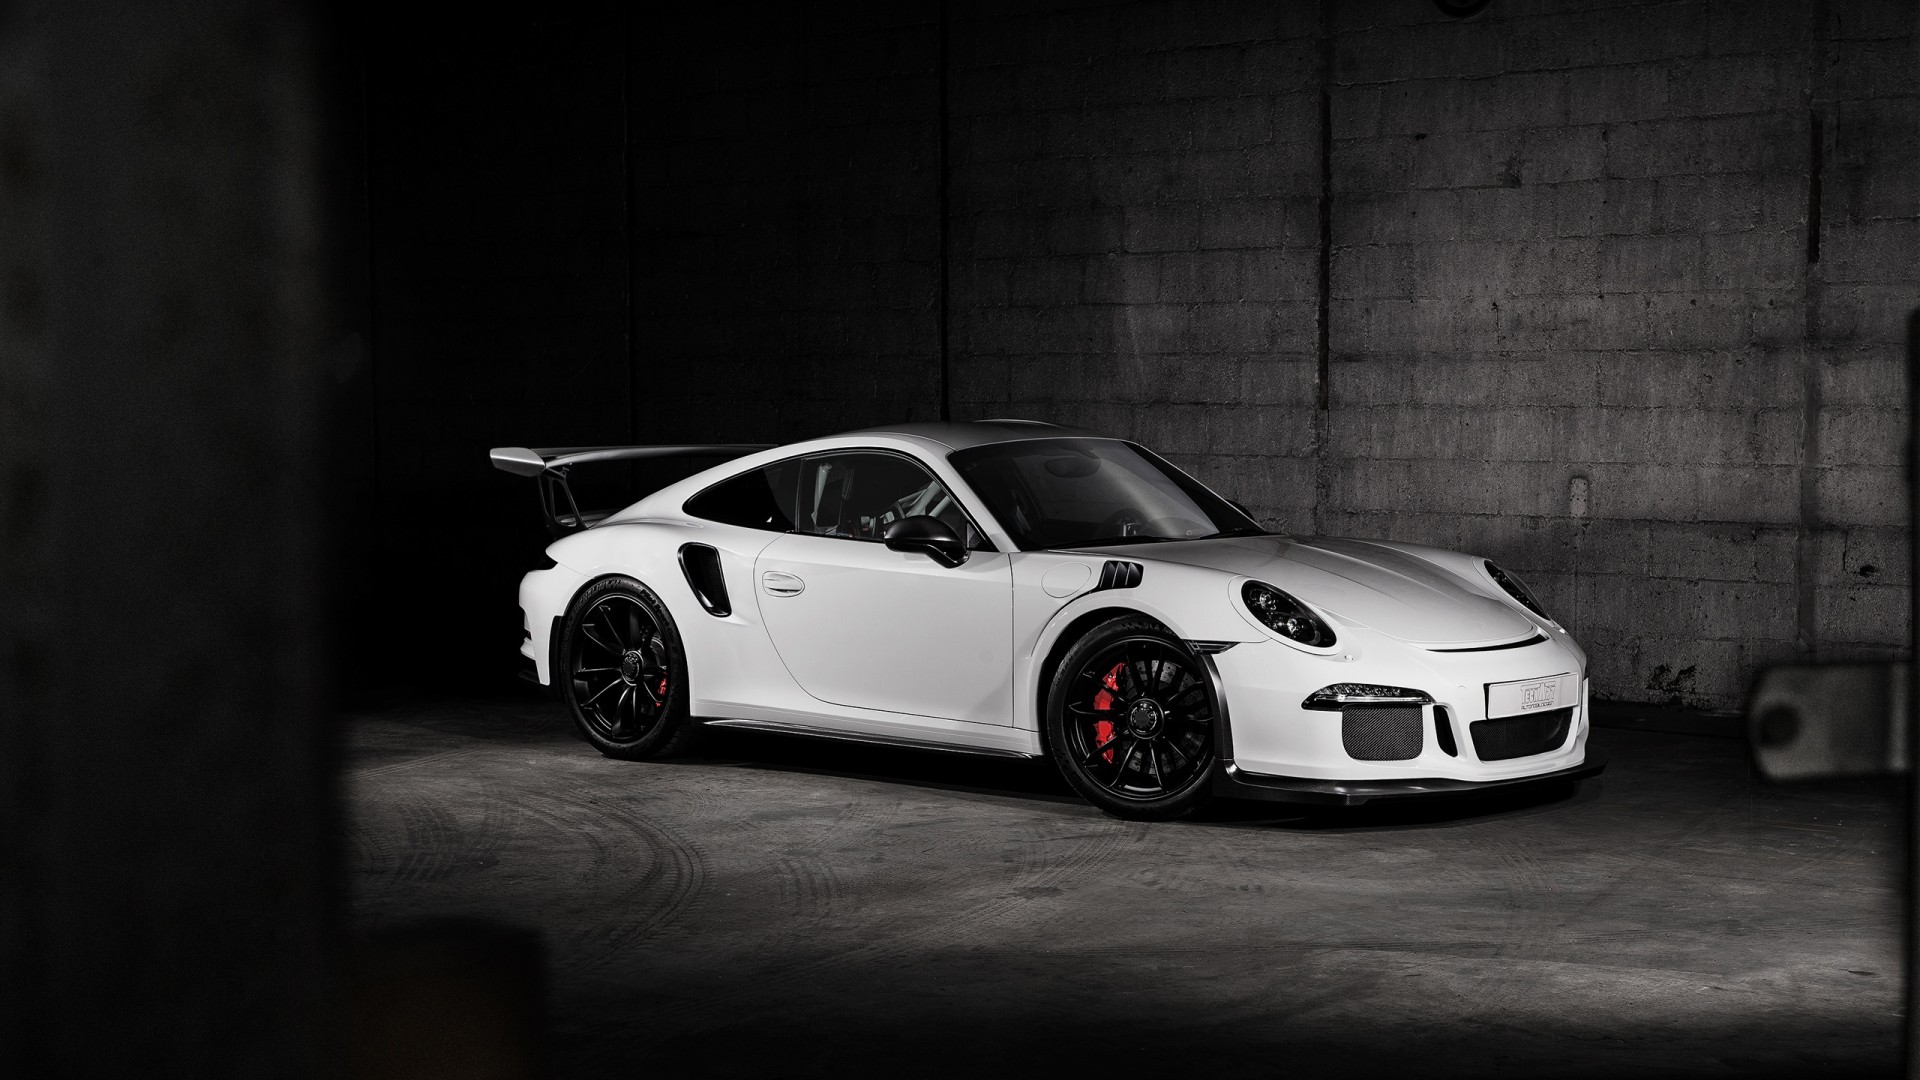 2016 Porsche 911 GT3 RS Carbon TechArt Wallpaper | HD Car Wallpapers